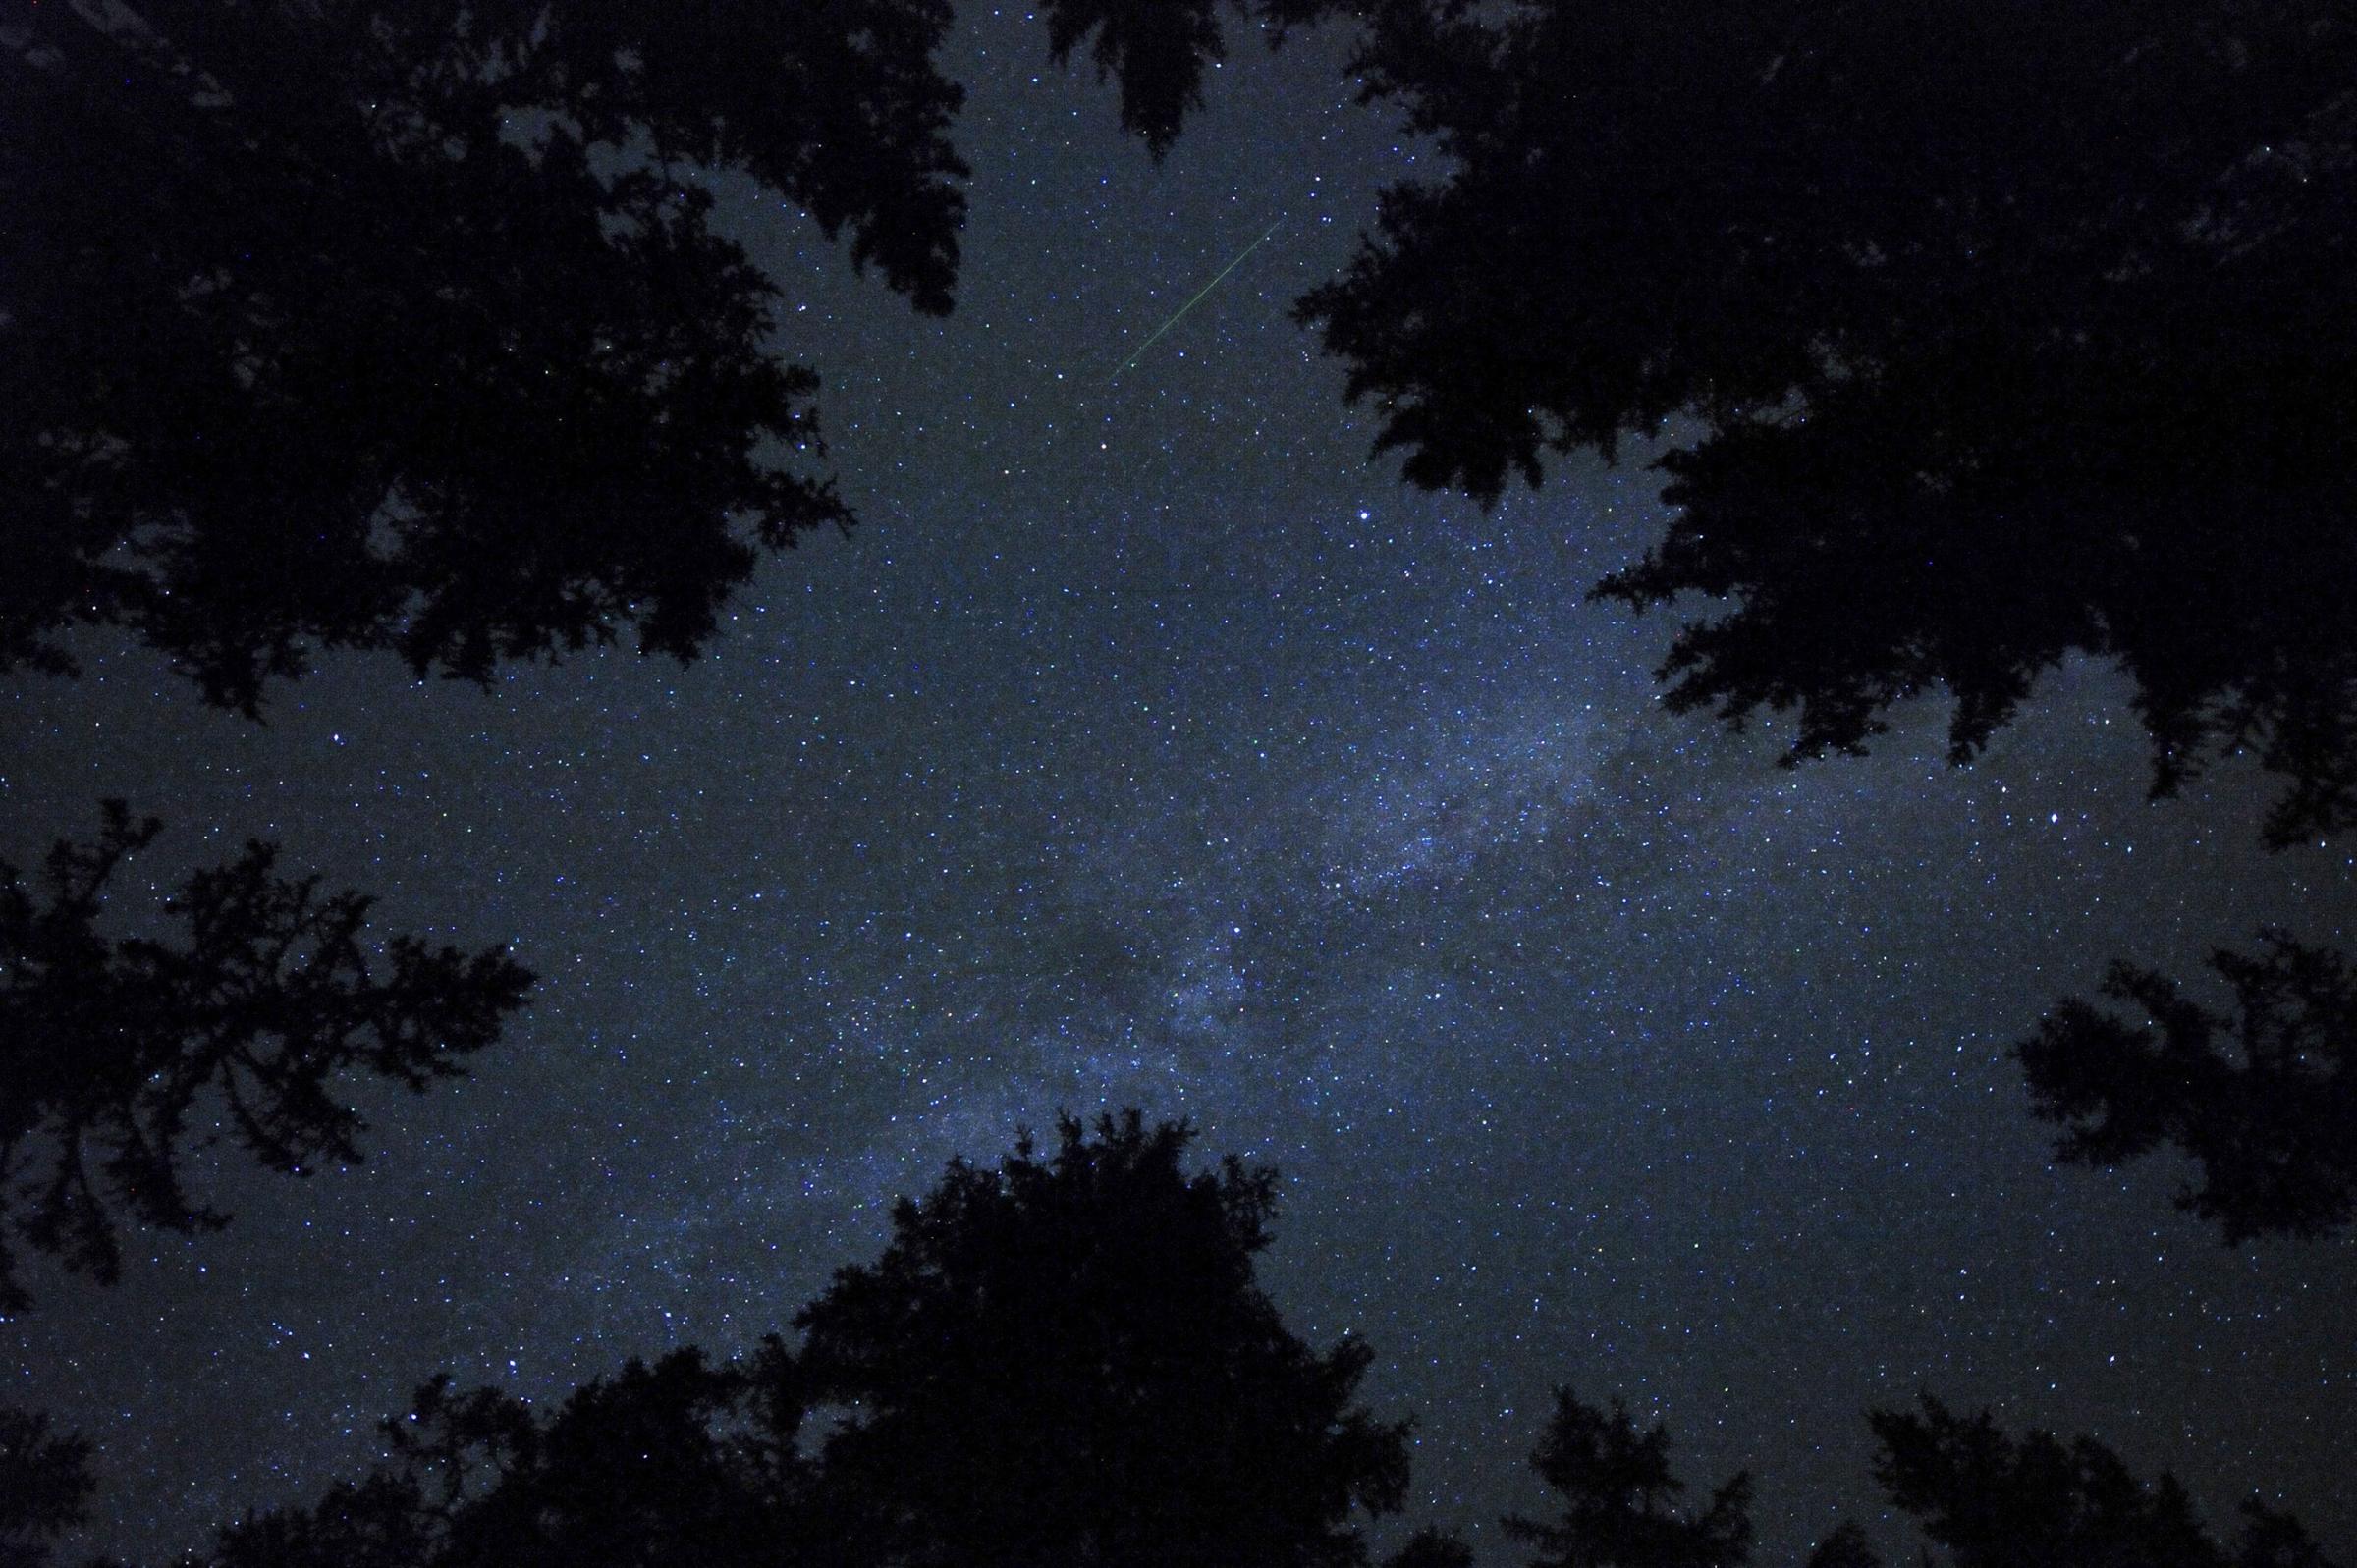 perseid meteor shower august 2015